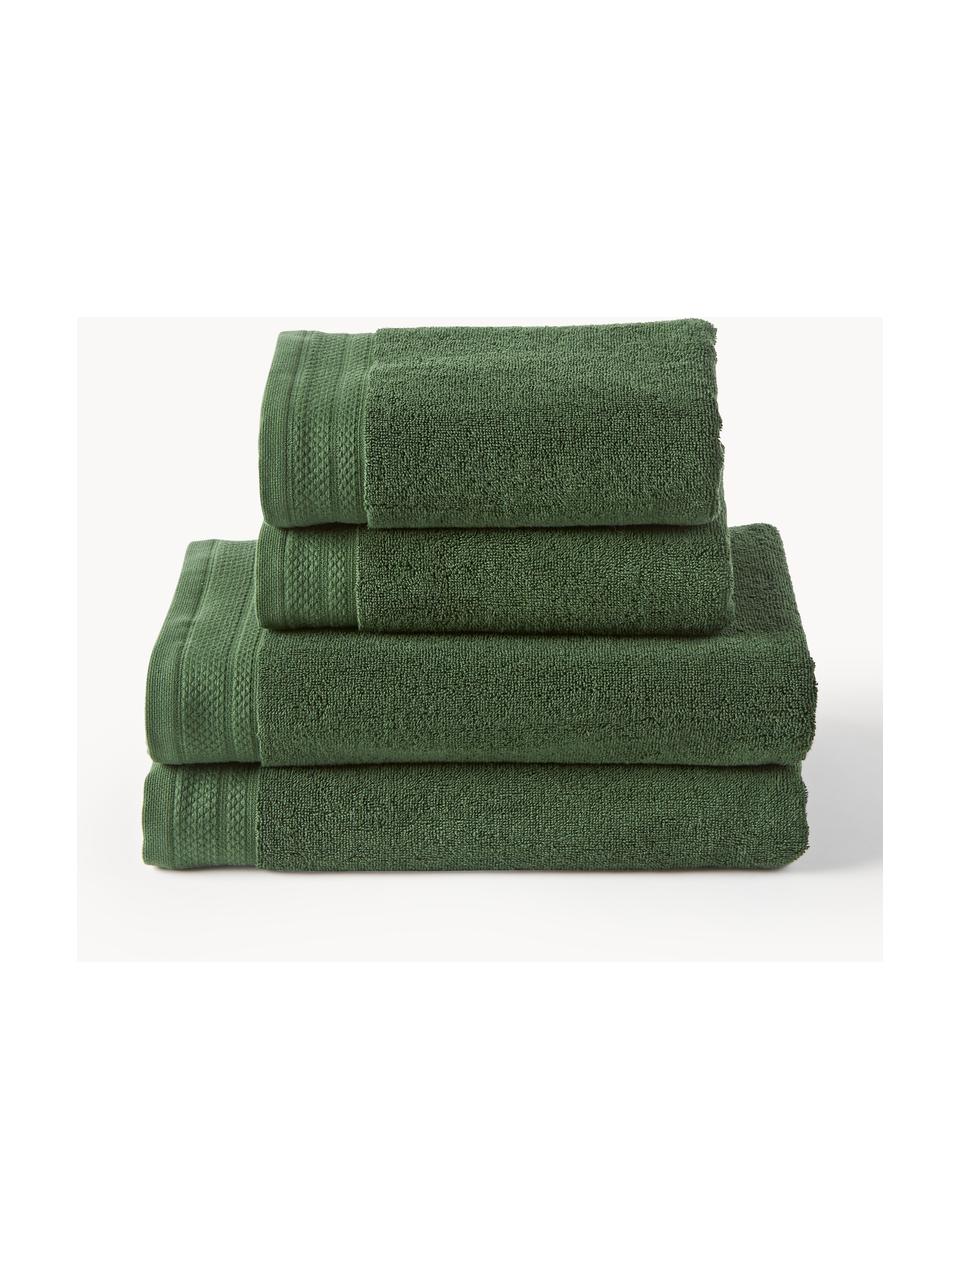 Komplet ręczników z bawełny organicznej Premium, różne rozmiary, Ciemny zielony, 6 elem. (ręcznik dla gości, ręcznik do rąk, ręcznik kąpielowy)